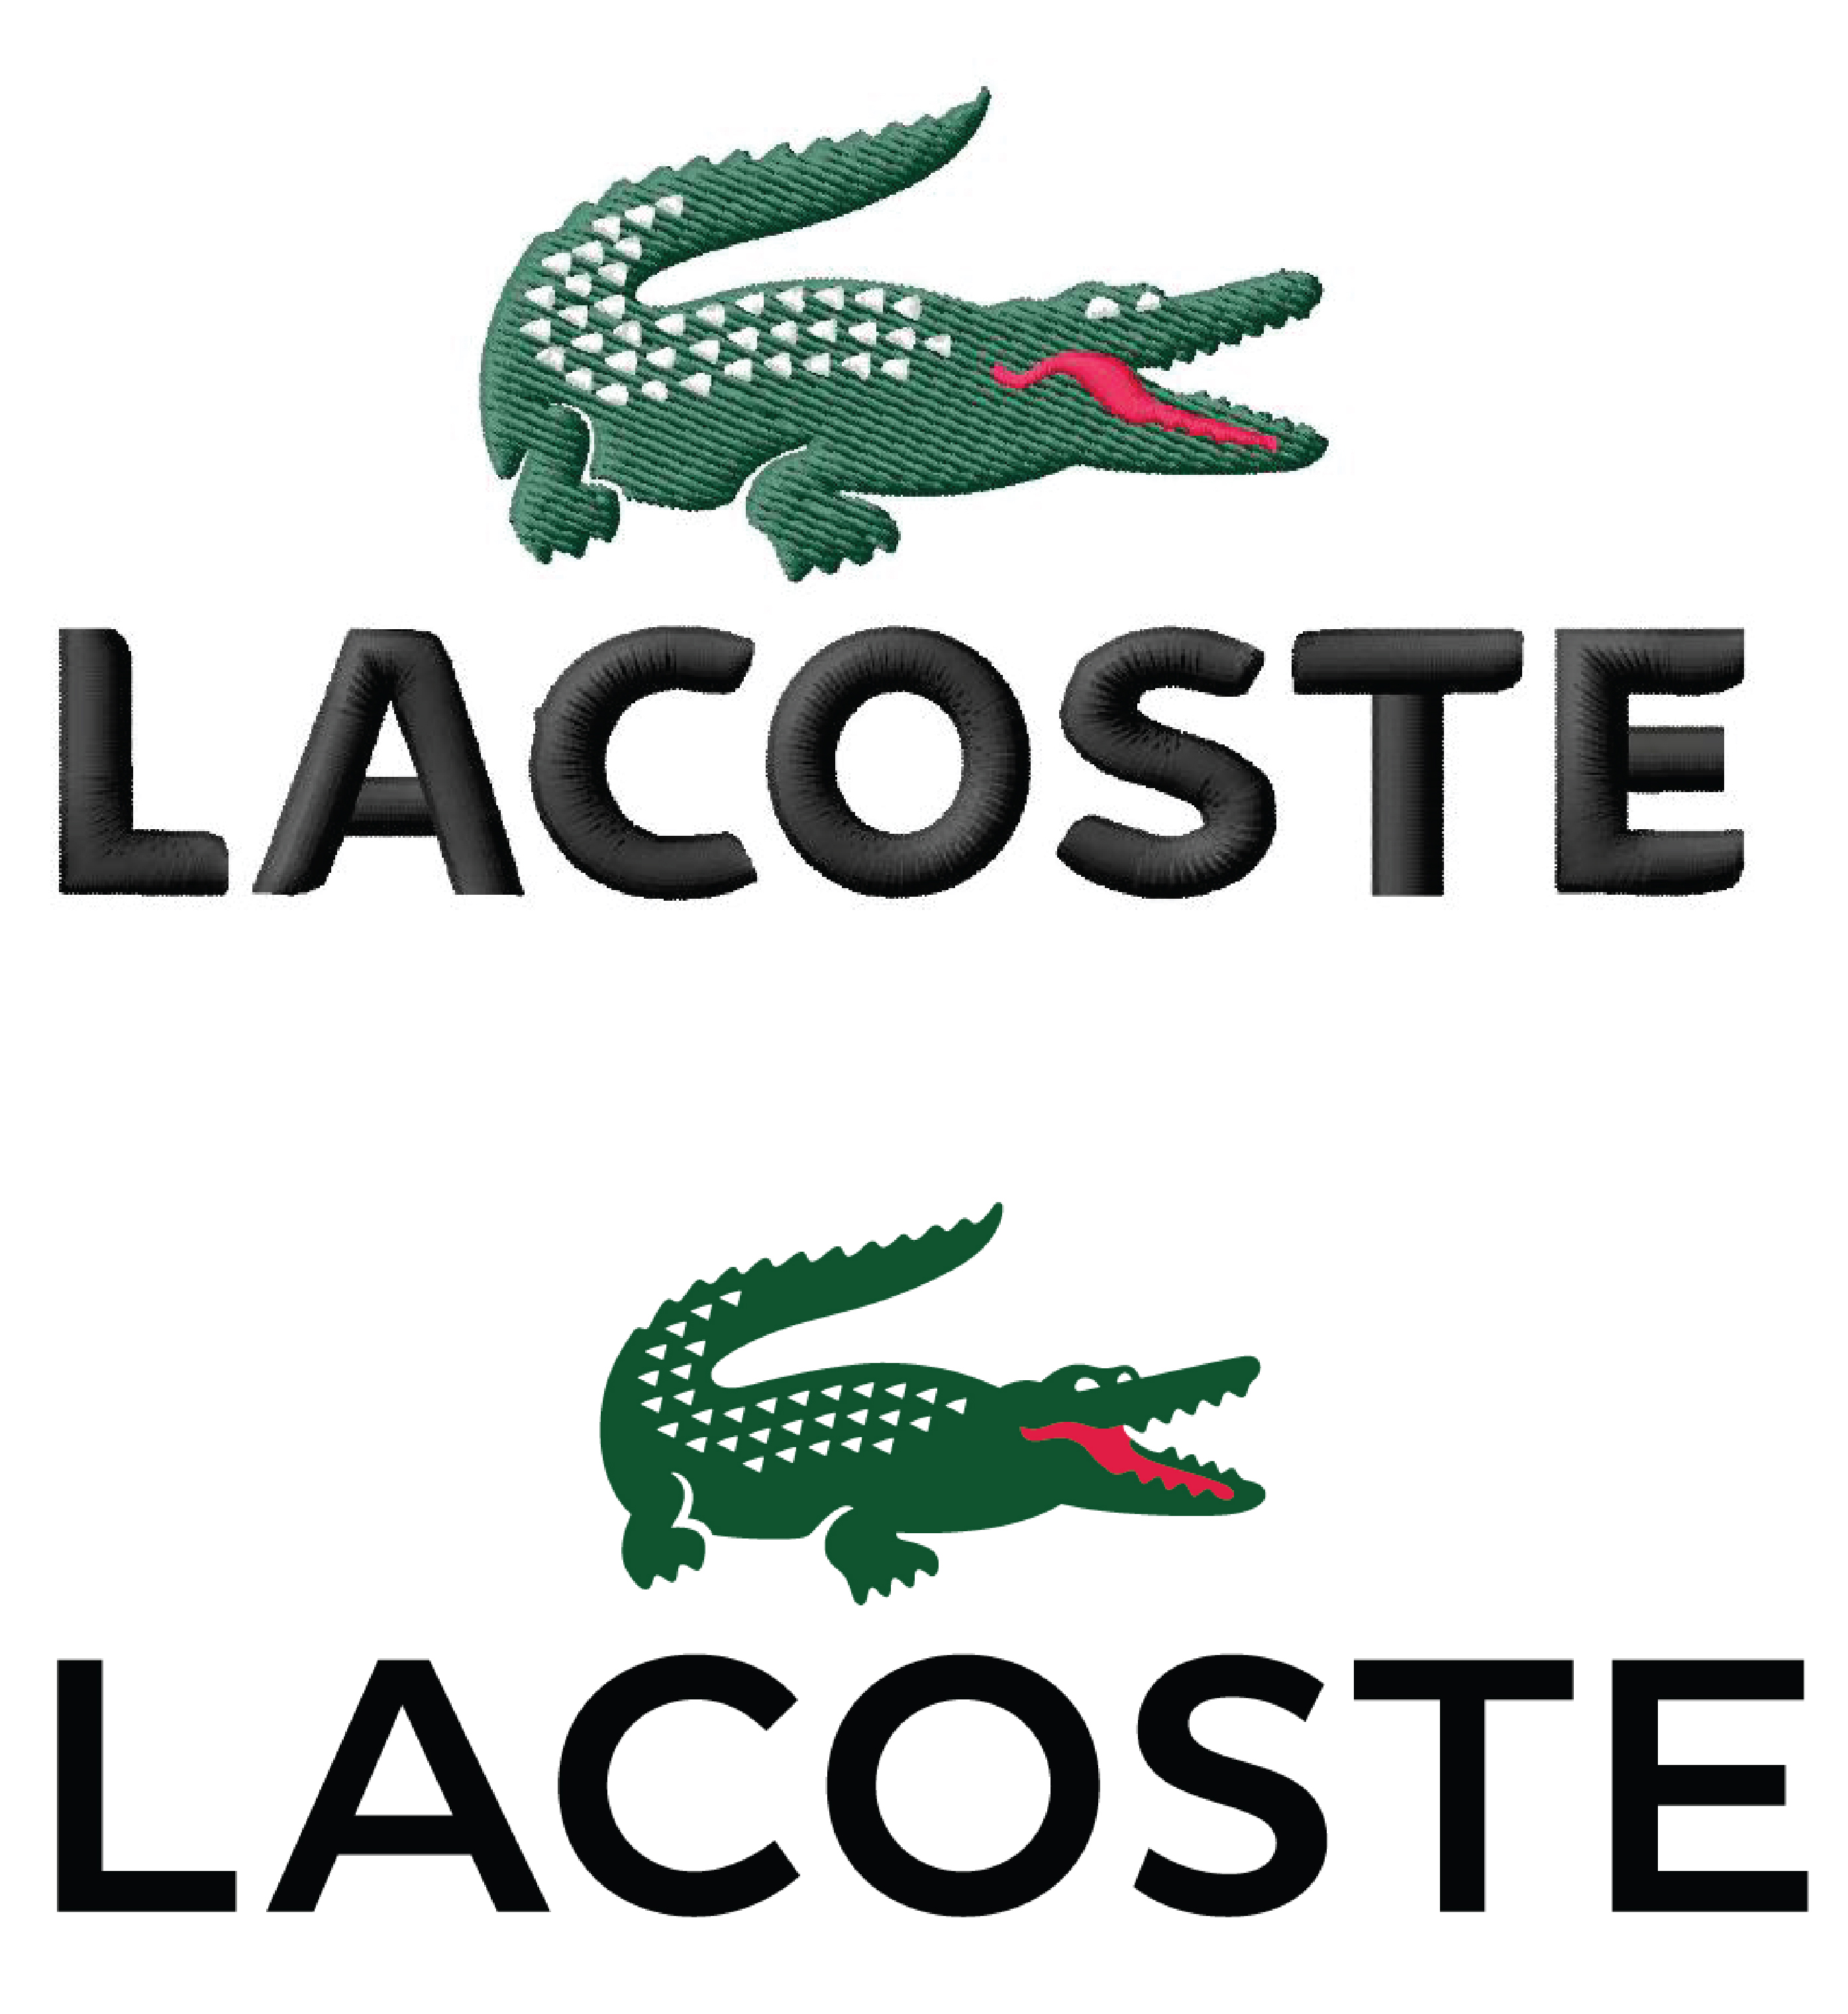 lacoste white logo